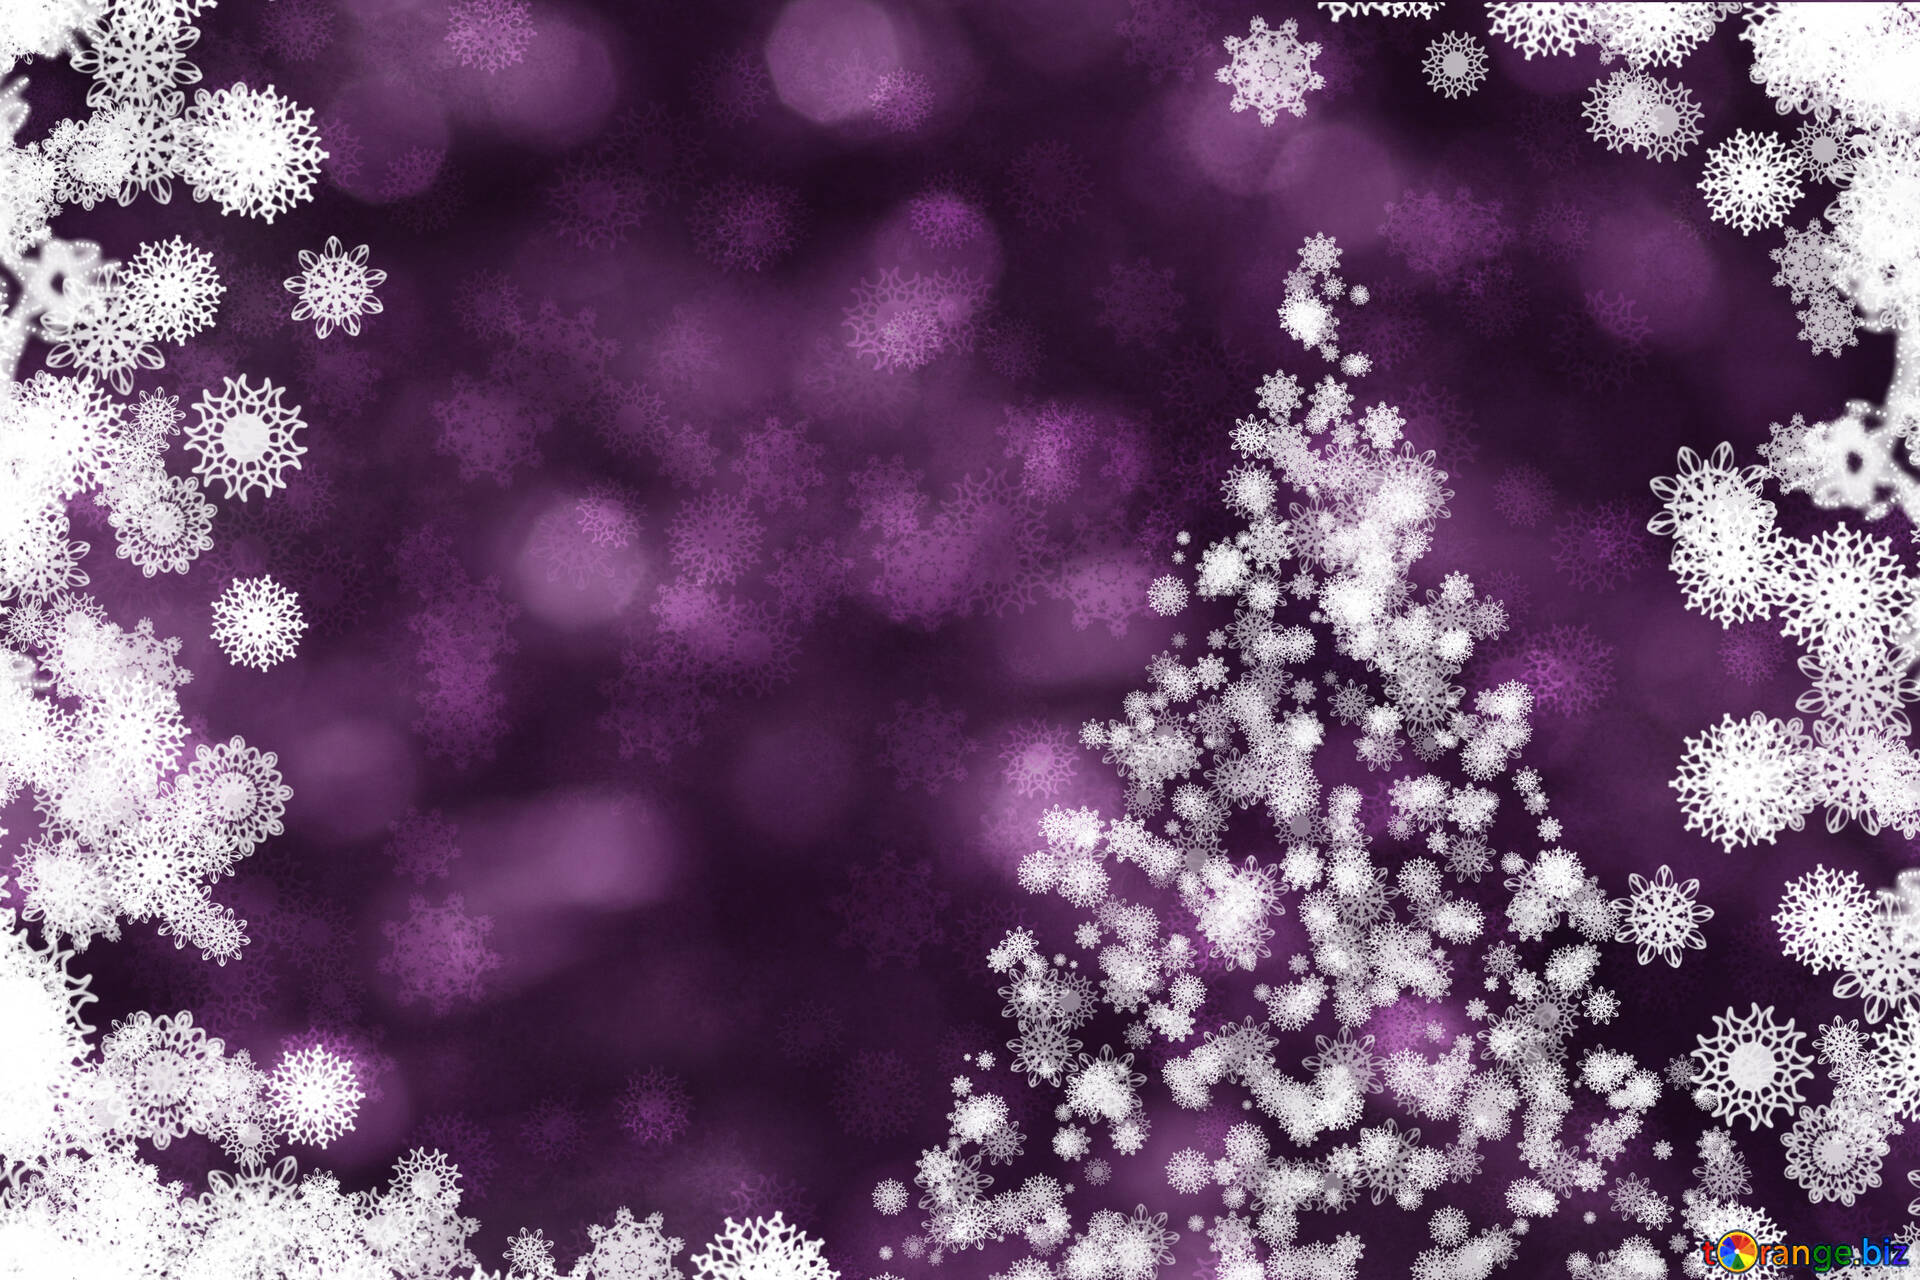 Một bức hình nền Giáng Sinh tuyệt đẹp với màu tím quý phái và chiếc cây thông Noel trang trí đầy màu sắc. Những đường nét tinh tế và sự kết hợp màu sắc vô cùng hài hòa tạo nên một bức ảnh tuyệt vời - giống như một món quà Giáng Sinh đang chờ đợi bạn.